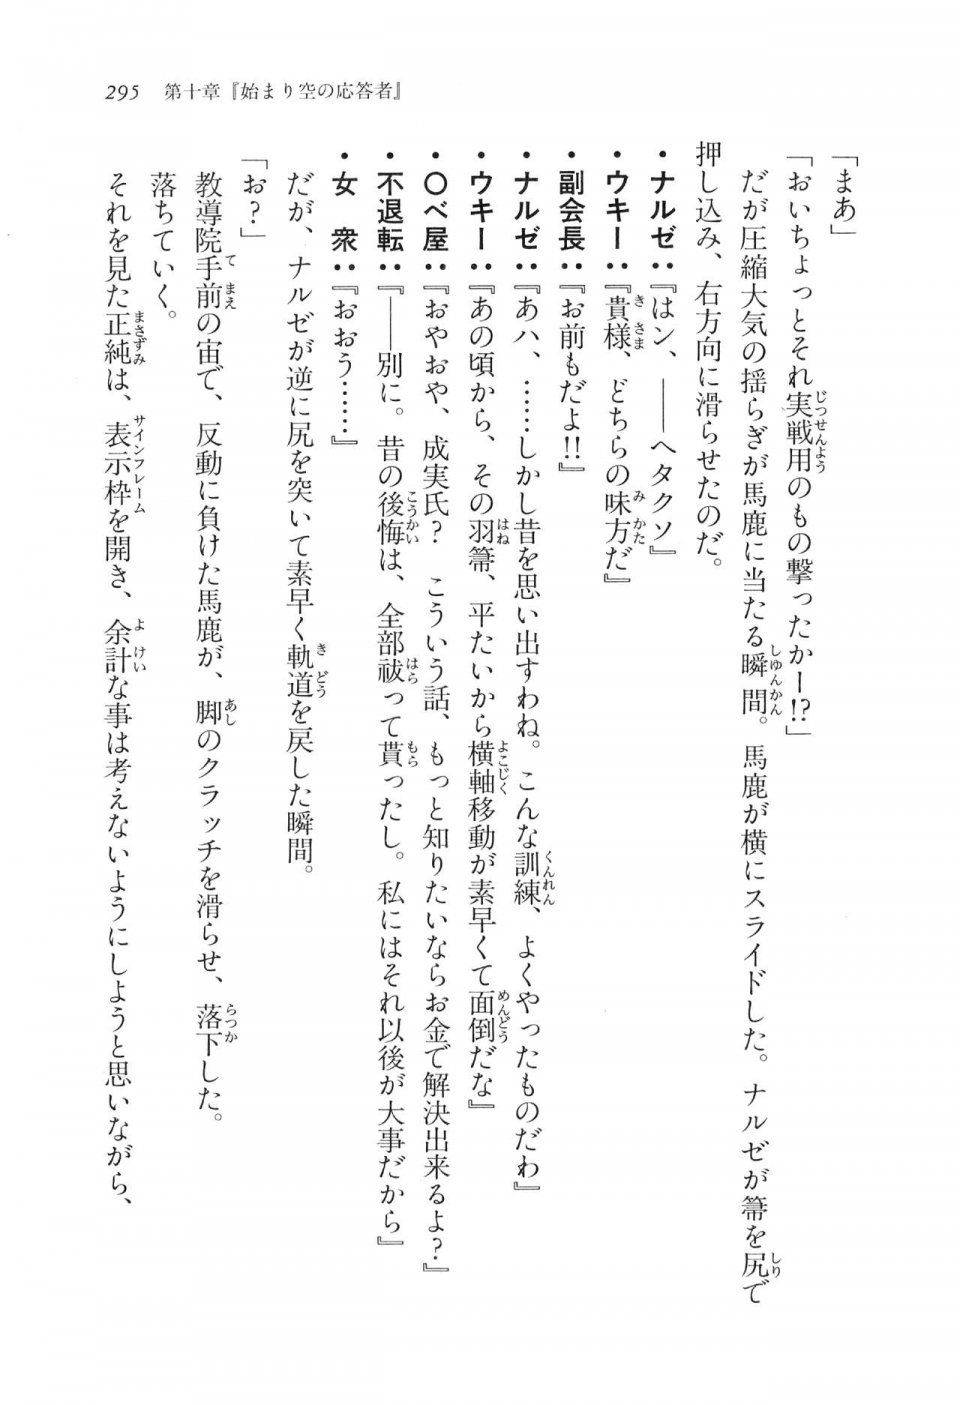 Kyoukai Senjou no Horizon LN Vol 11(5A) - Photo #295